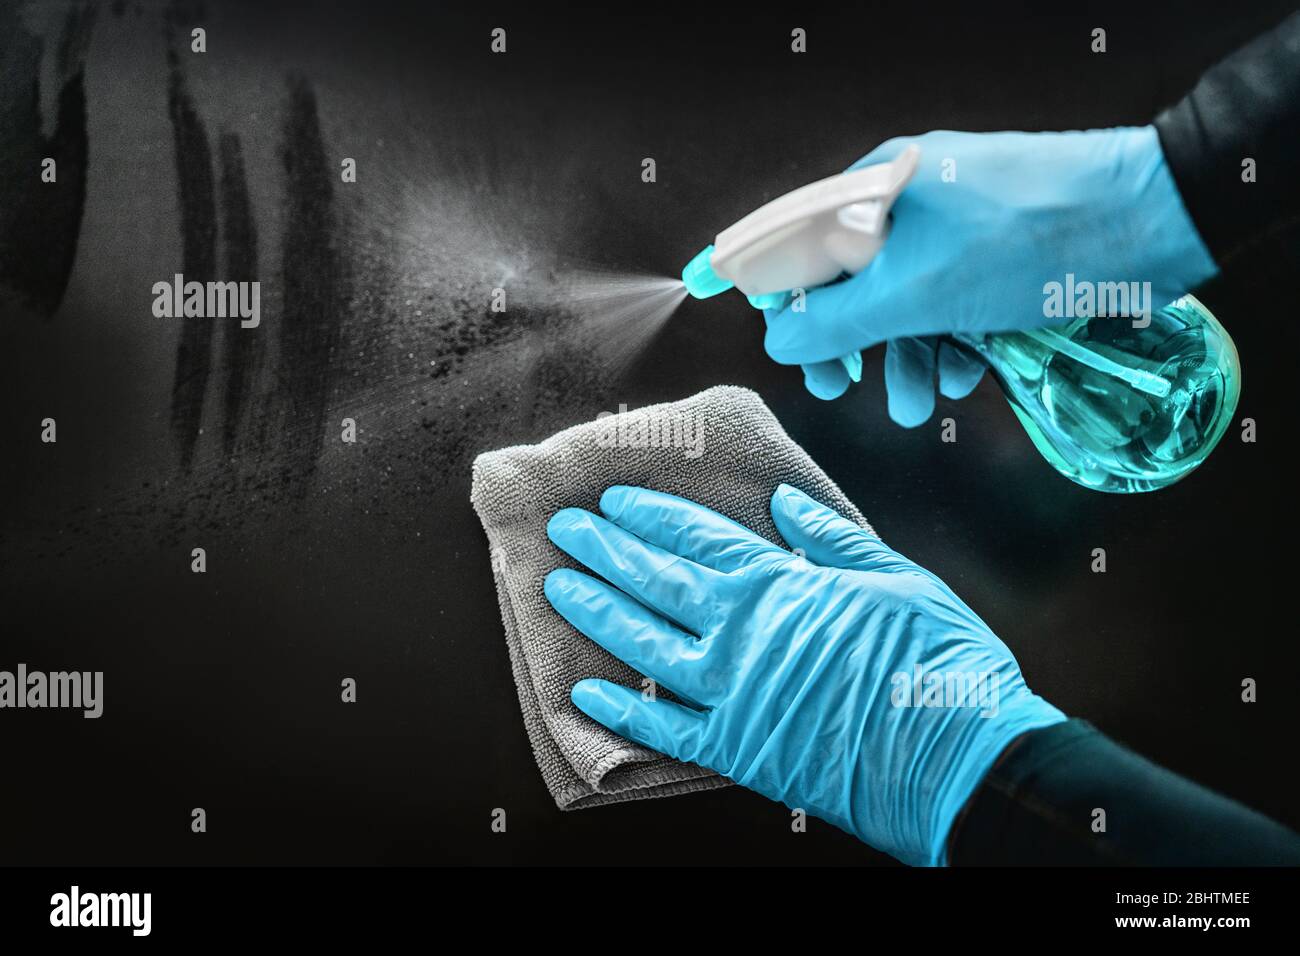 Oberflächenreinigung Desinfektion zu Hause mit desinfizierenden antibakteriellen Wischtüchern Schutz gegen COVID-19 Verbreitung mit medizinischen blauen Handschuhen. Desinfizieren Sie Oberflächen Prävention in Krankenhäusern und öffentlichen Räumen. Stockfoto